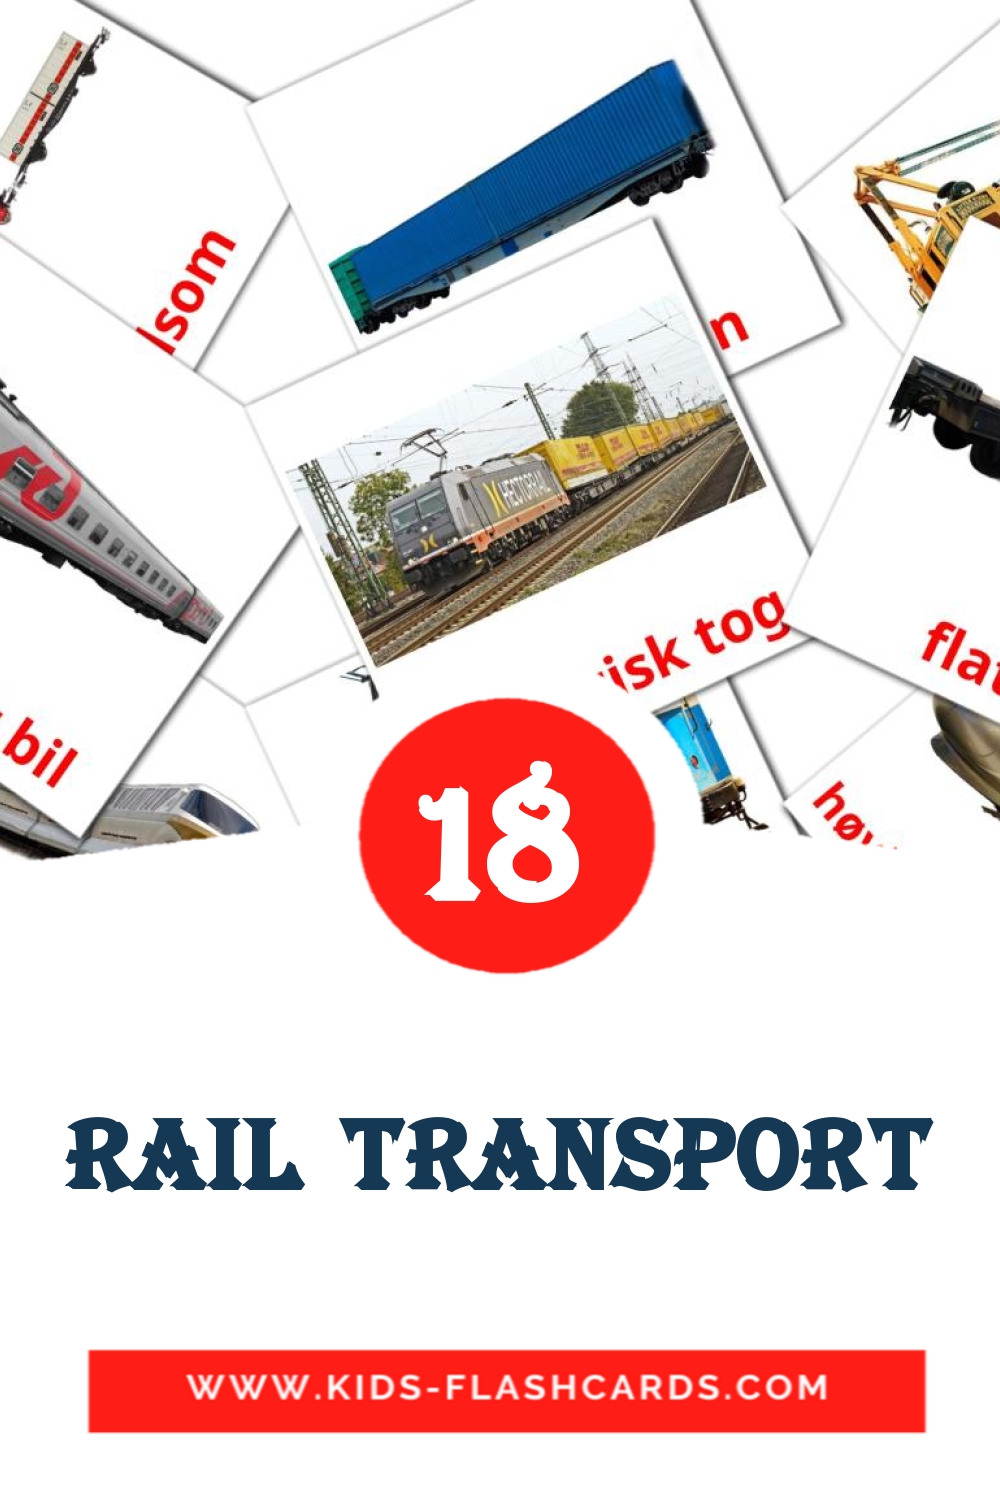 18 tarjetas didacticas de Rail transport para el jardín de infancia en noruego